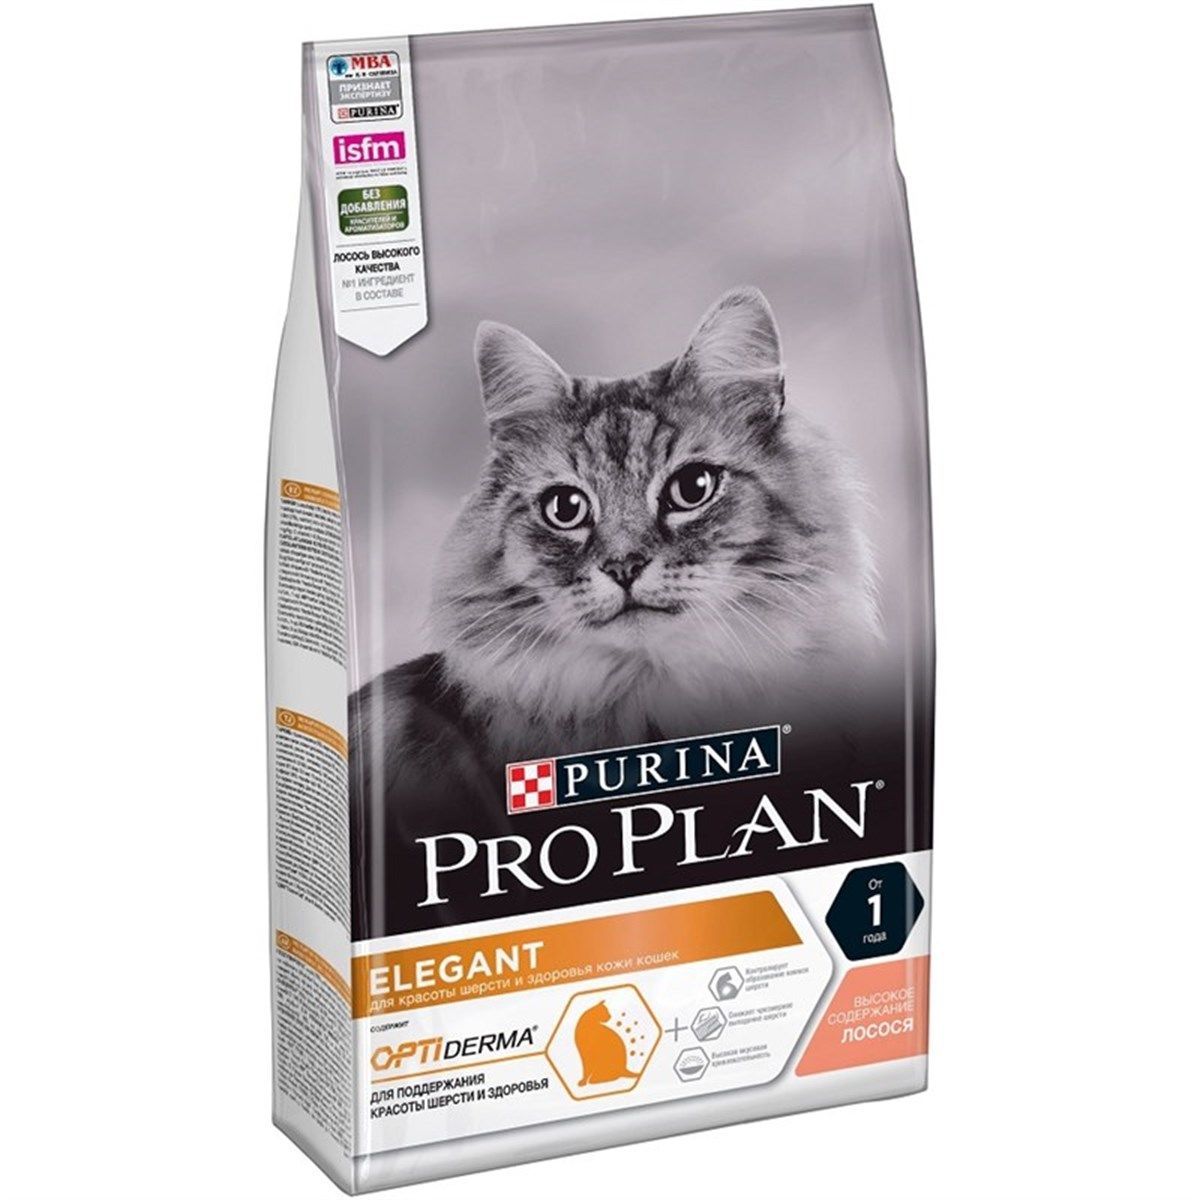 Pro Plan Elegant Somonlu Yetişkin Kedi Maması 3 kg